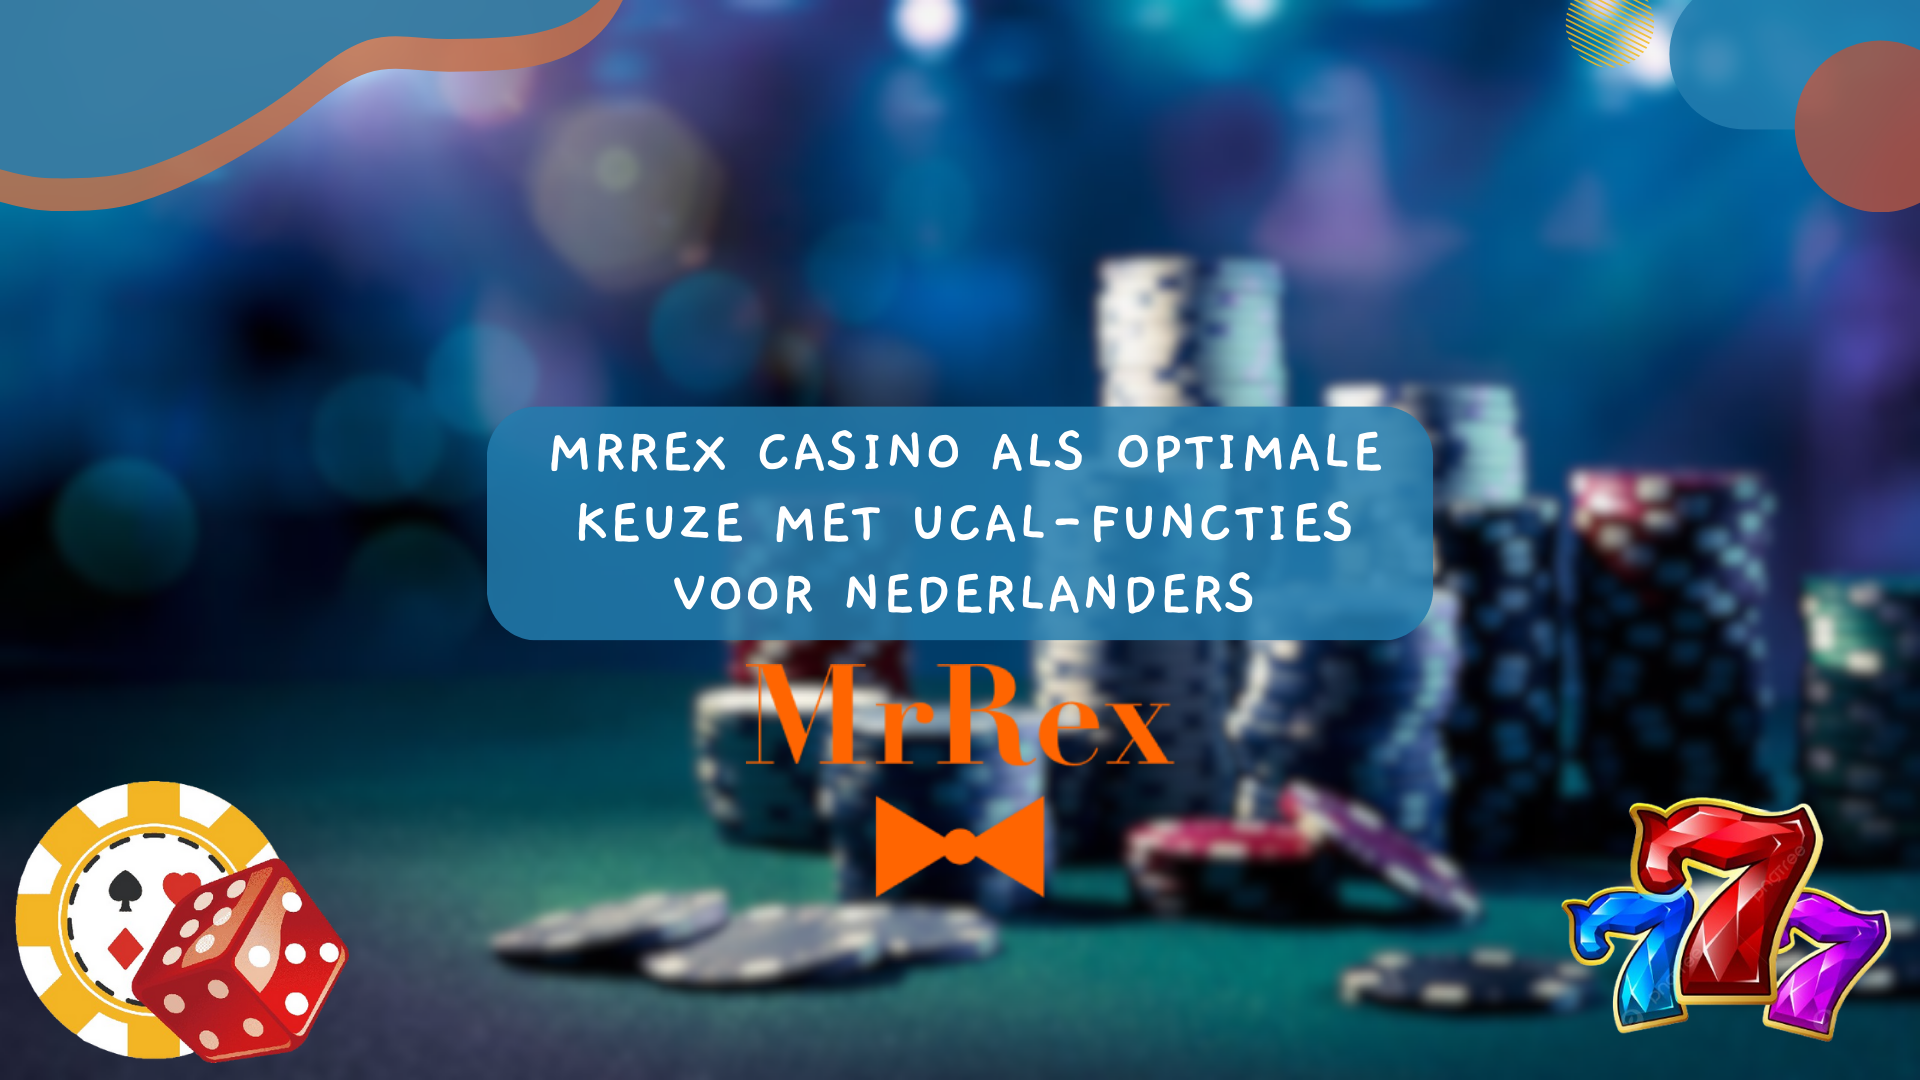 MrRex Casino als optimale keuze met Ucal-functies voor Nederlanders